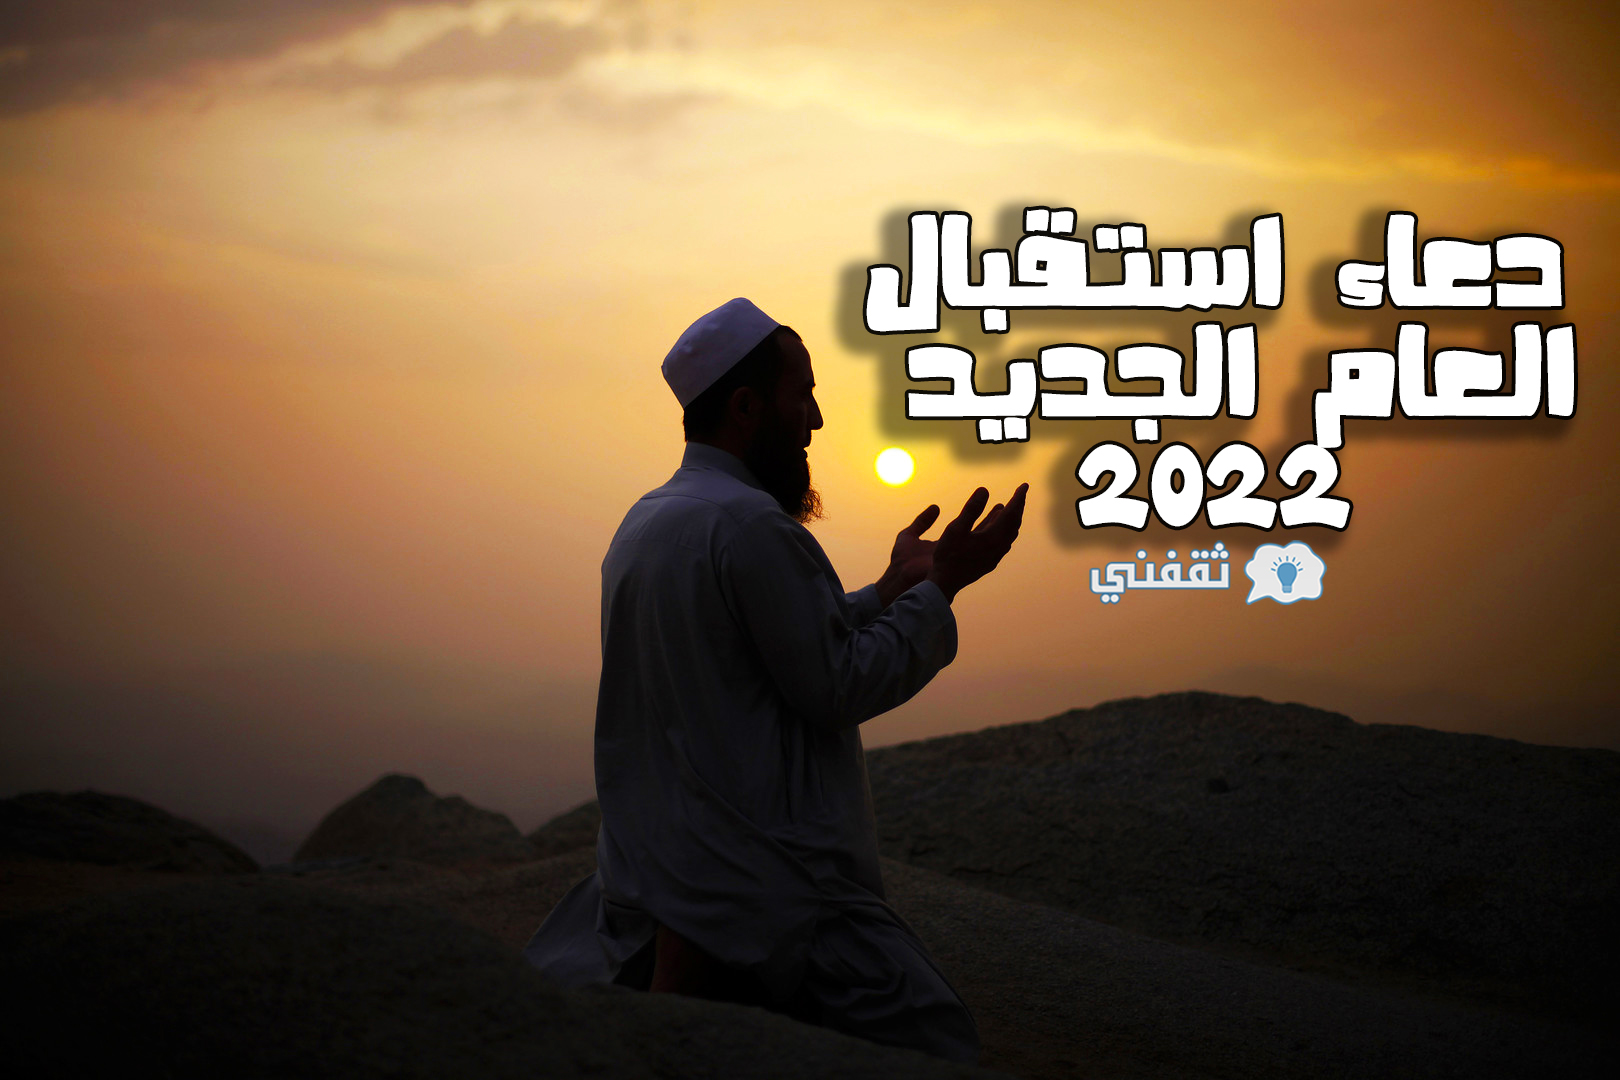 بوستات تهنئة بالعام الجديد 2022